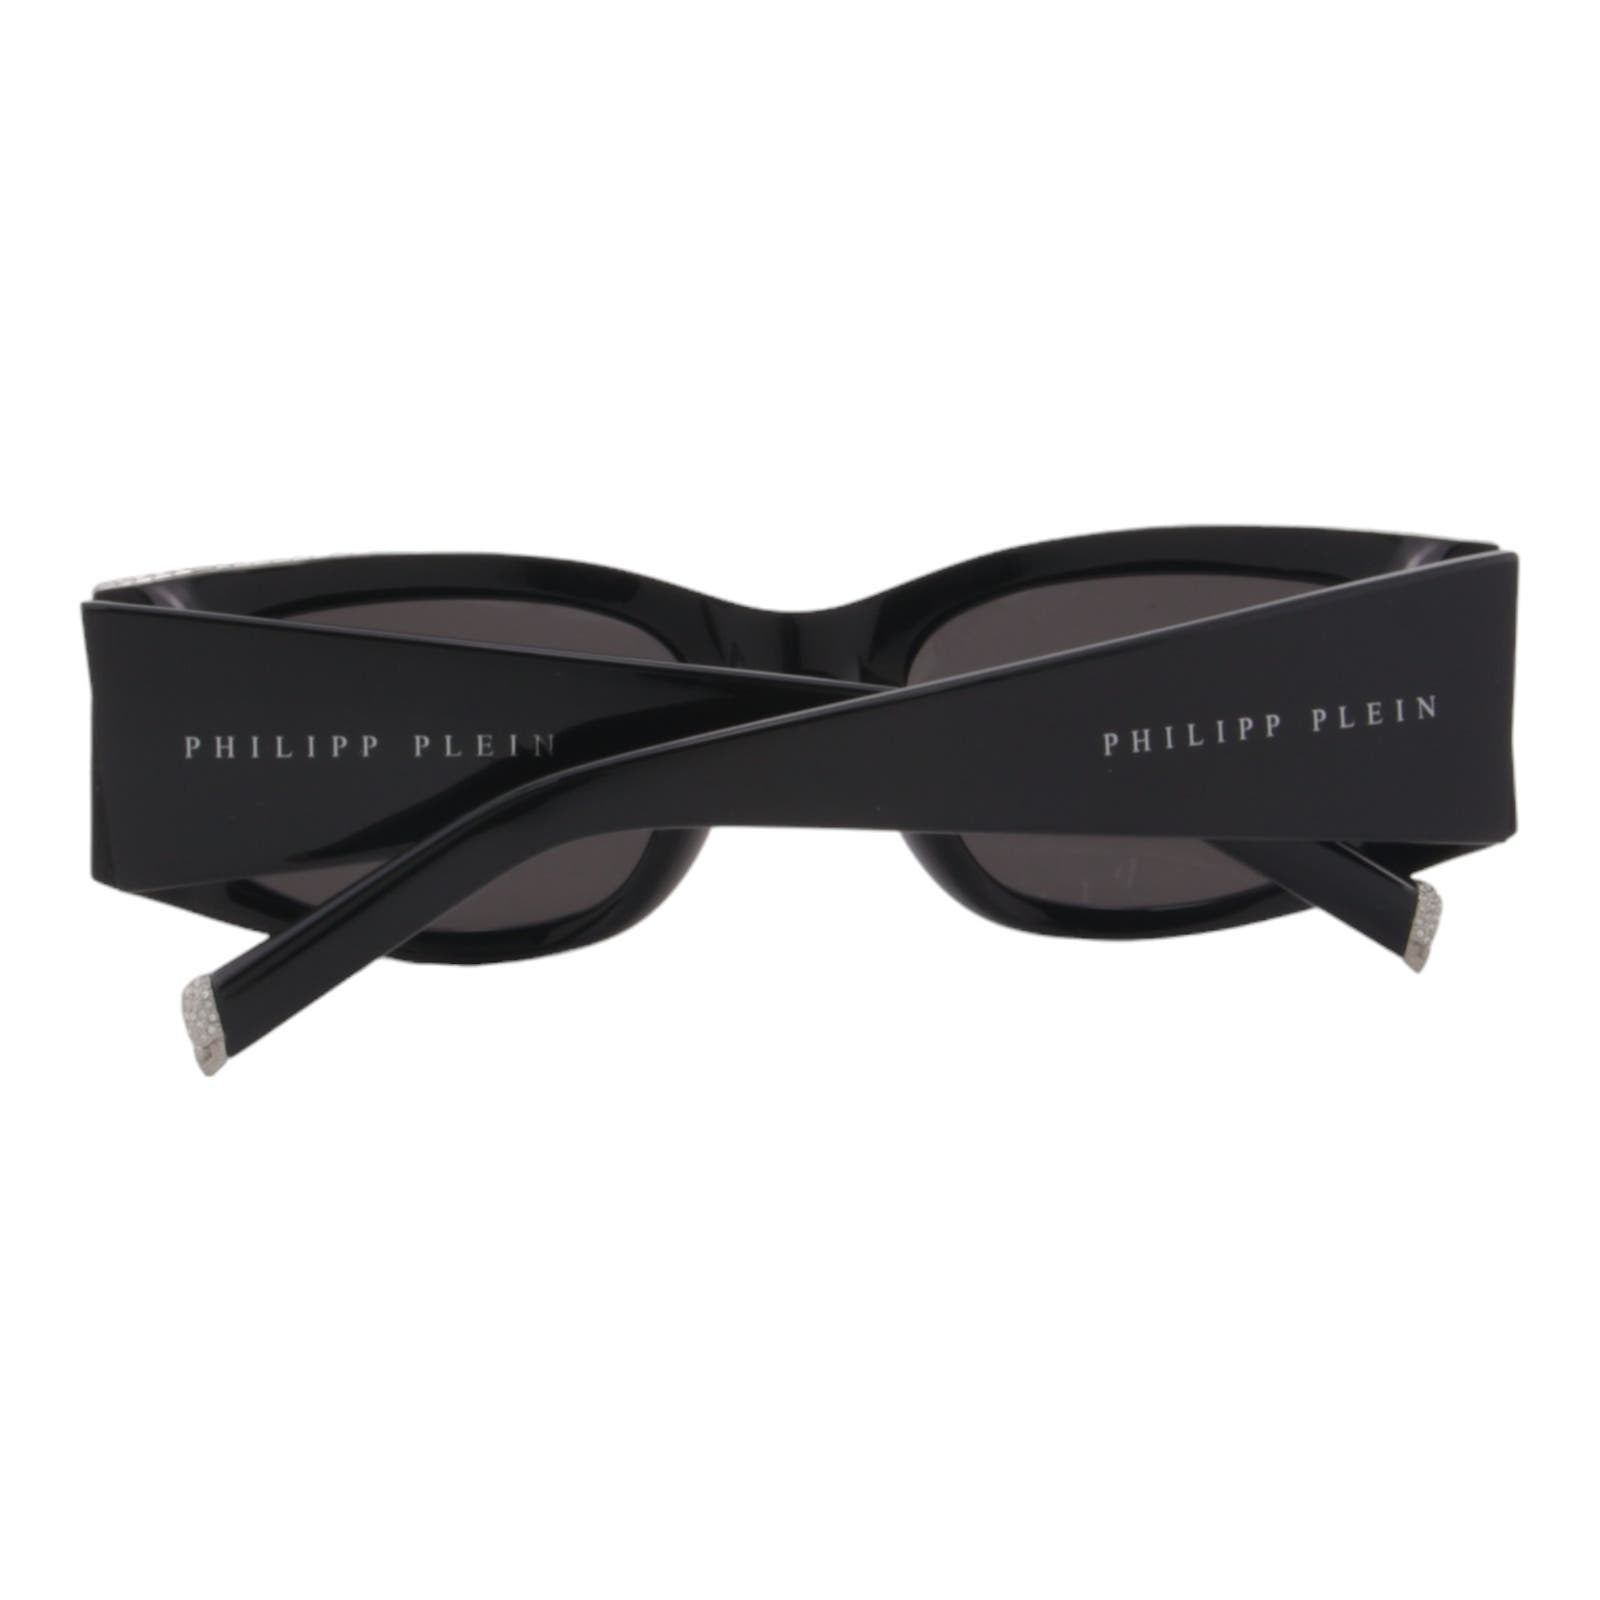 Women Slim Rectangle Sunglasses SPP025S-0700 Black & Silver Frame